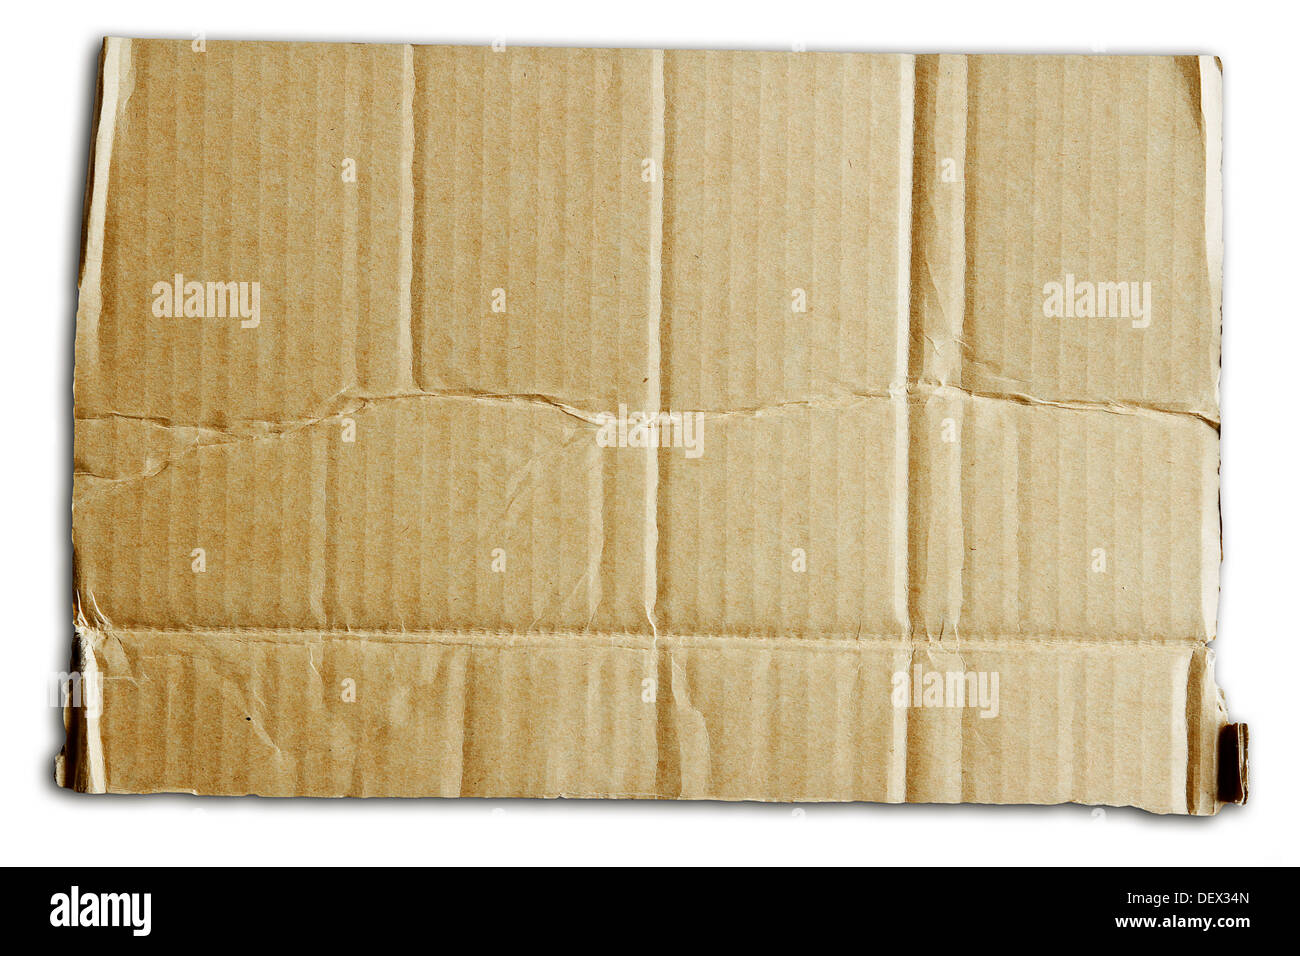 Closeup of cardboard texture Stock Photo